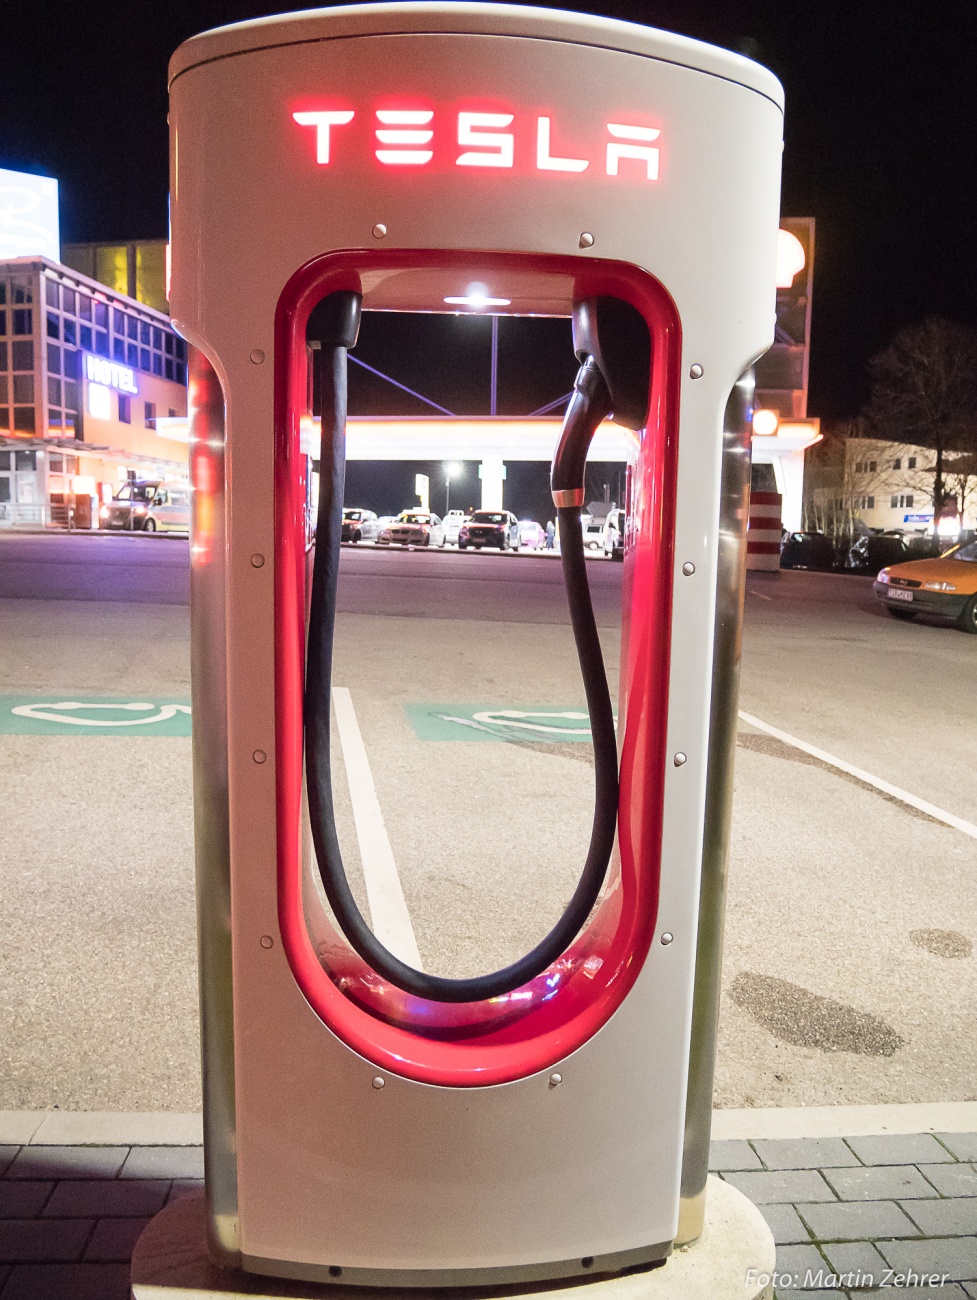 Foto: Martin Zehrer - Tesla Supercharger - Die Tankstelle zum Schnell-laden für Tesla-Elektrofahrzeuge.<br />
<br />
Diese Ladesäulen stehen in der Nähe zu Regensburg auf dem Parkplatz eines Autohofs. I 